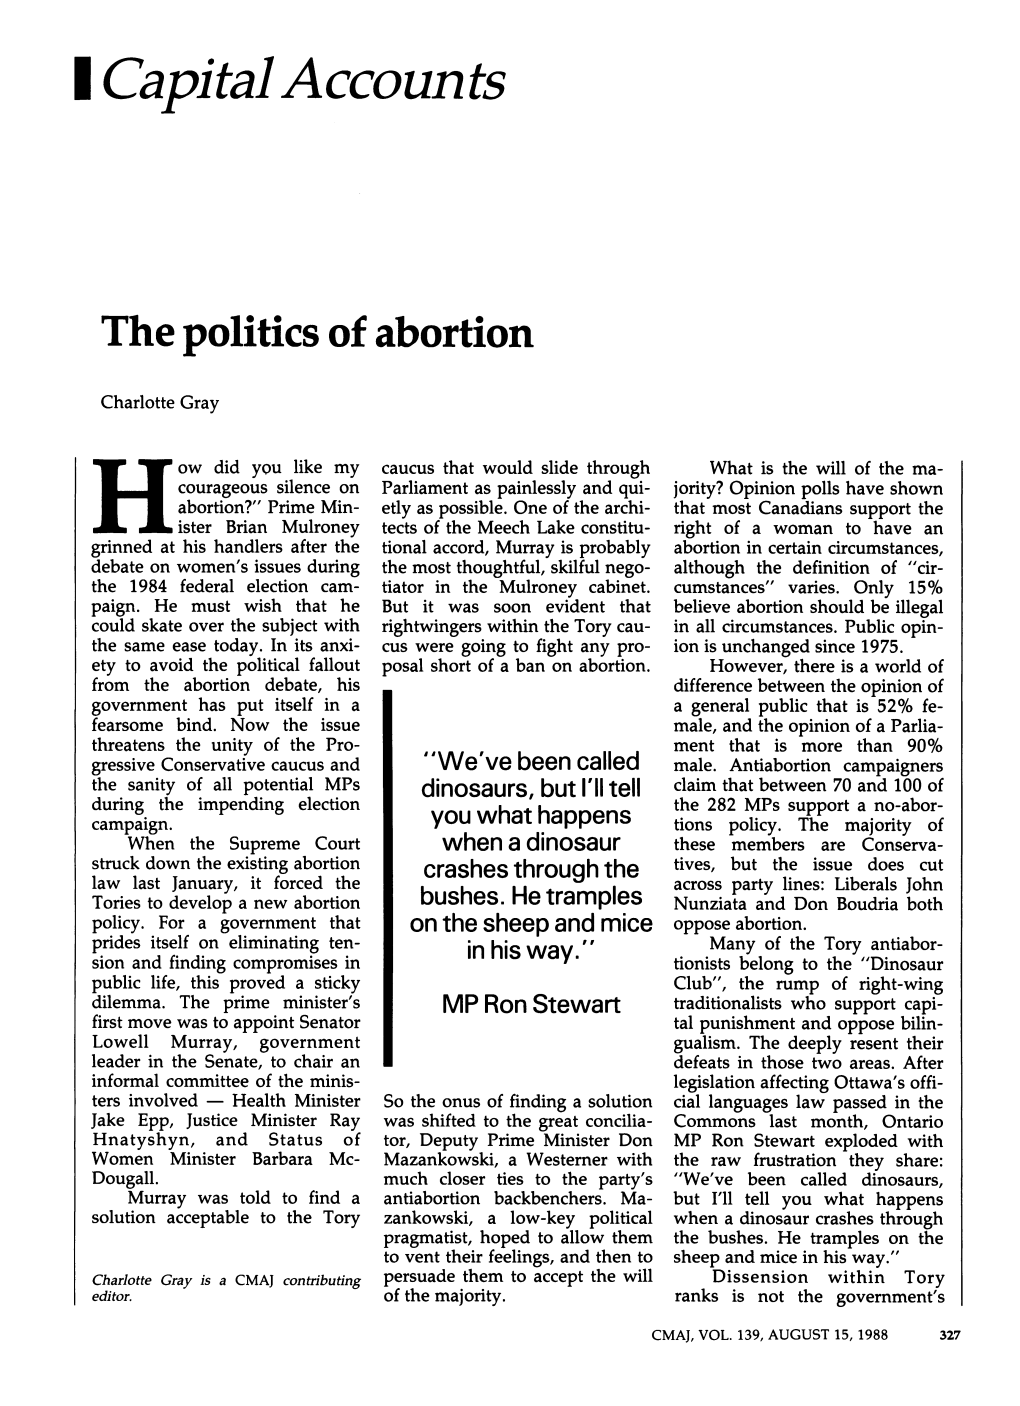 I Capitalaccounts the Politics of Abortion